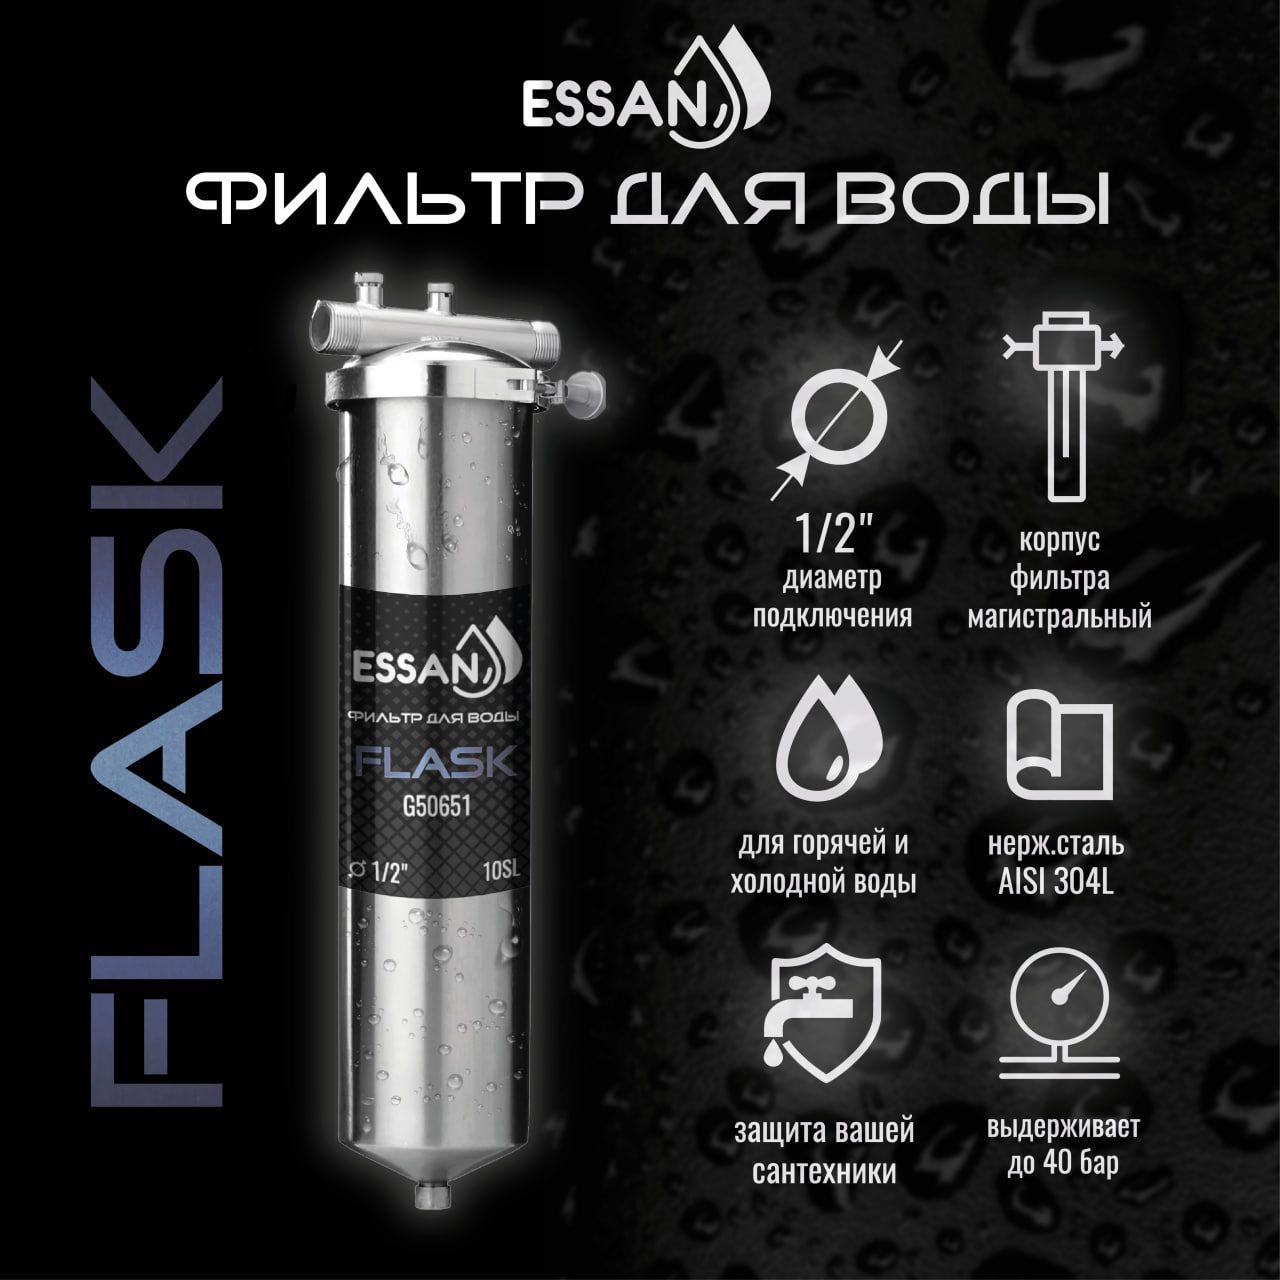 Фильтр колба проточная для магистрального водоснабжения ESSAN FLASK 10SL 1/2 H Slim Line фильтр колба проточная для магистрального водоснабжения essan flask 10sl 3 4 h slim line